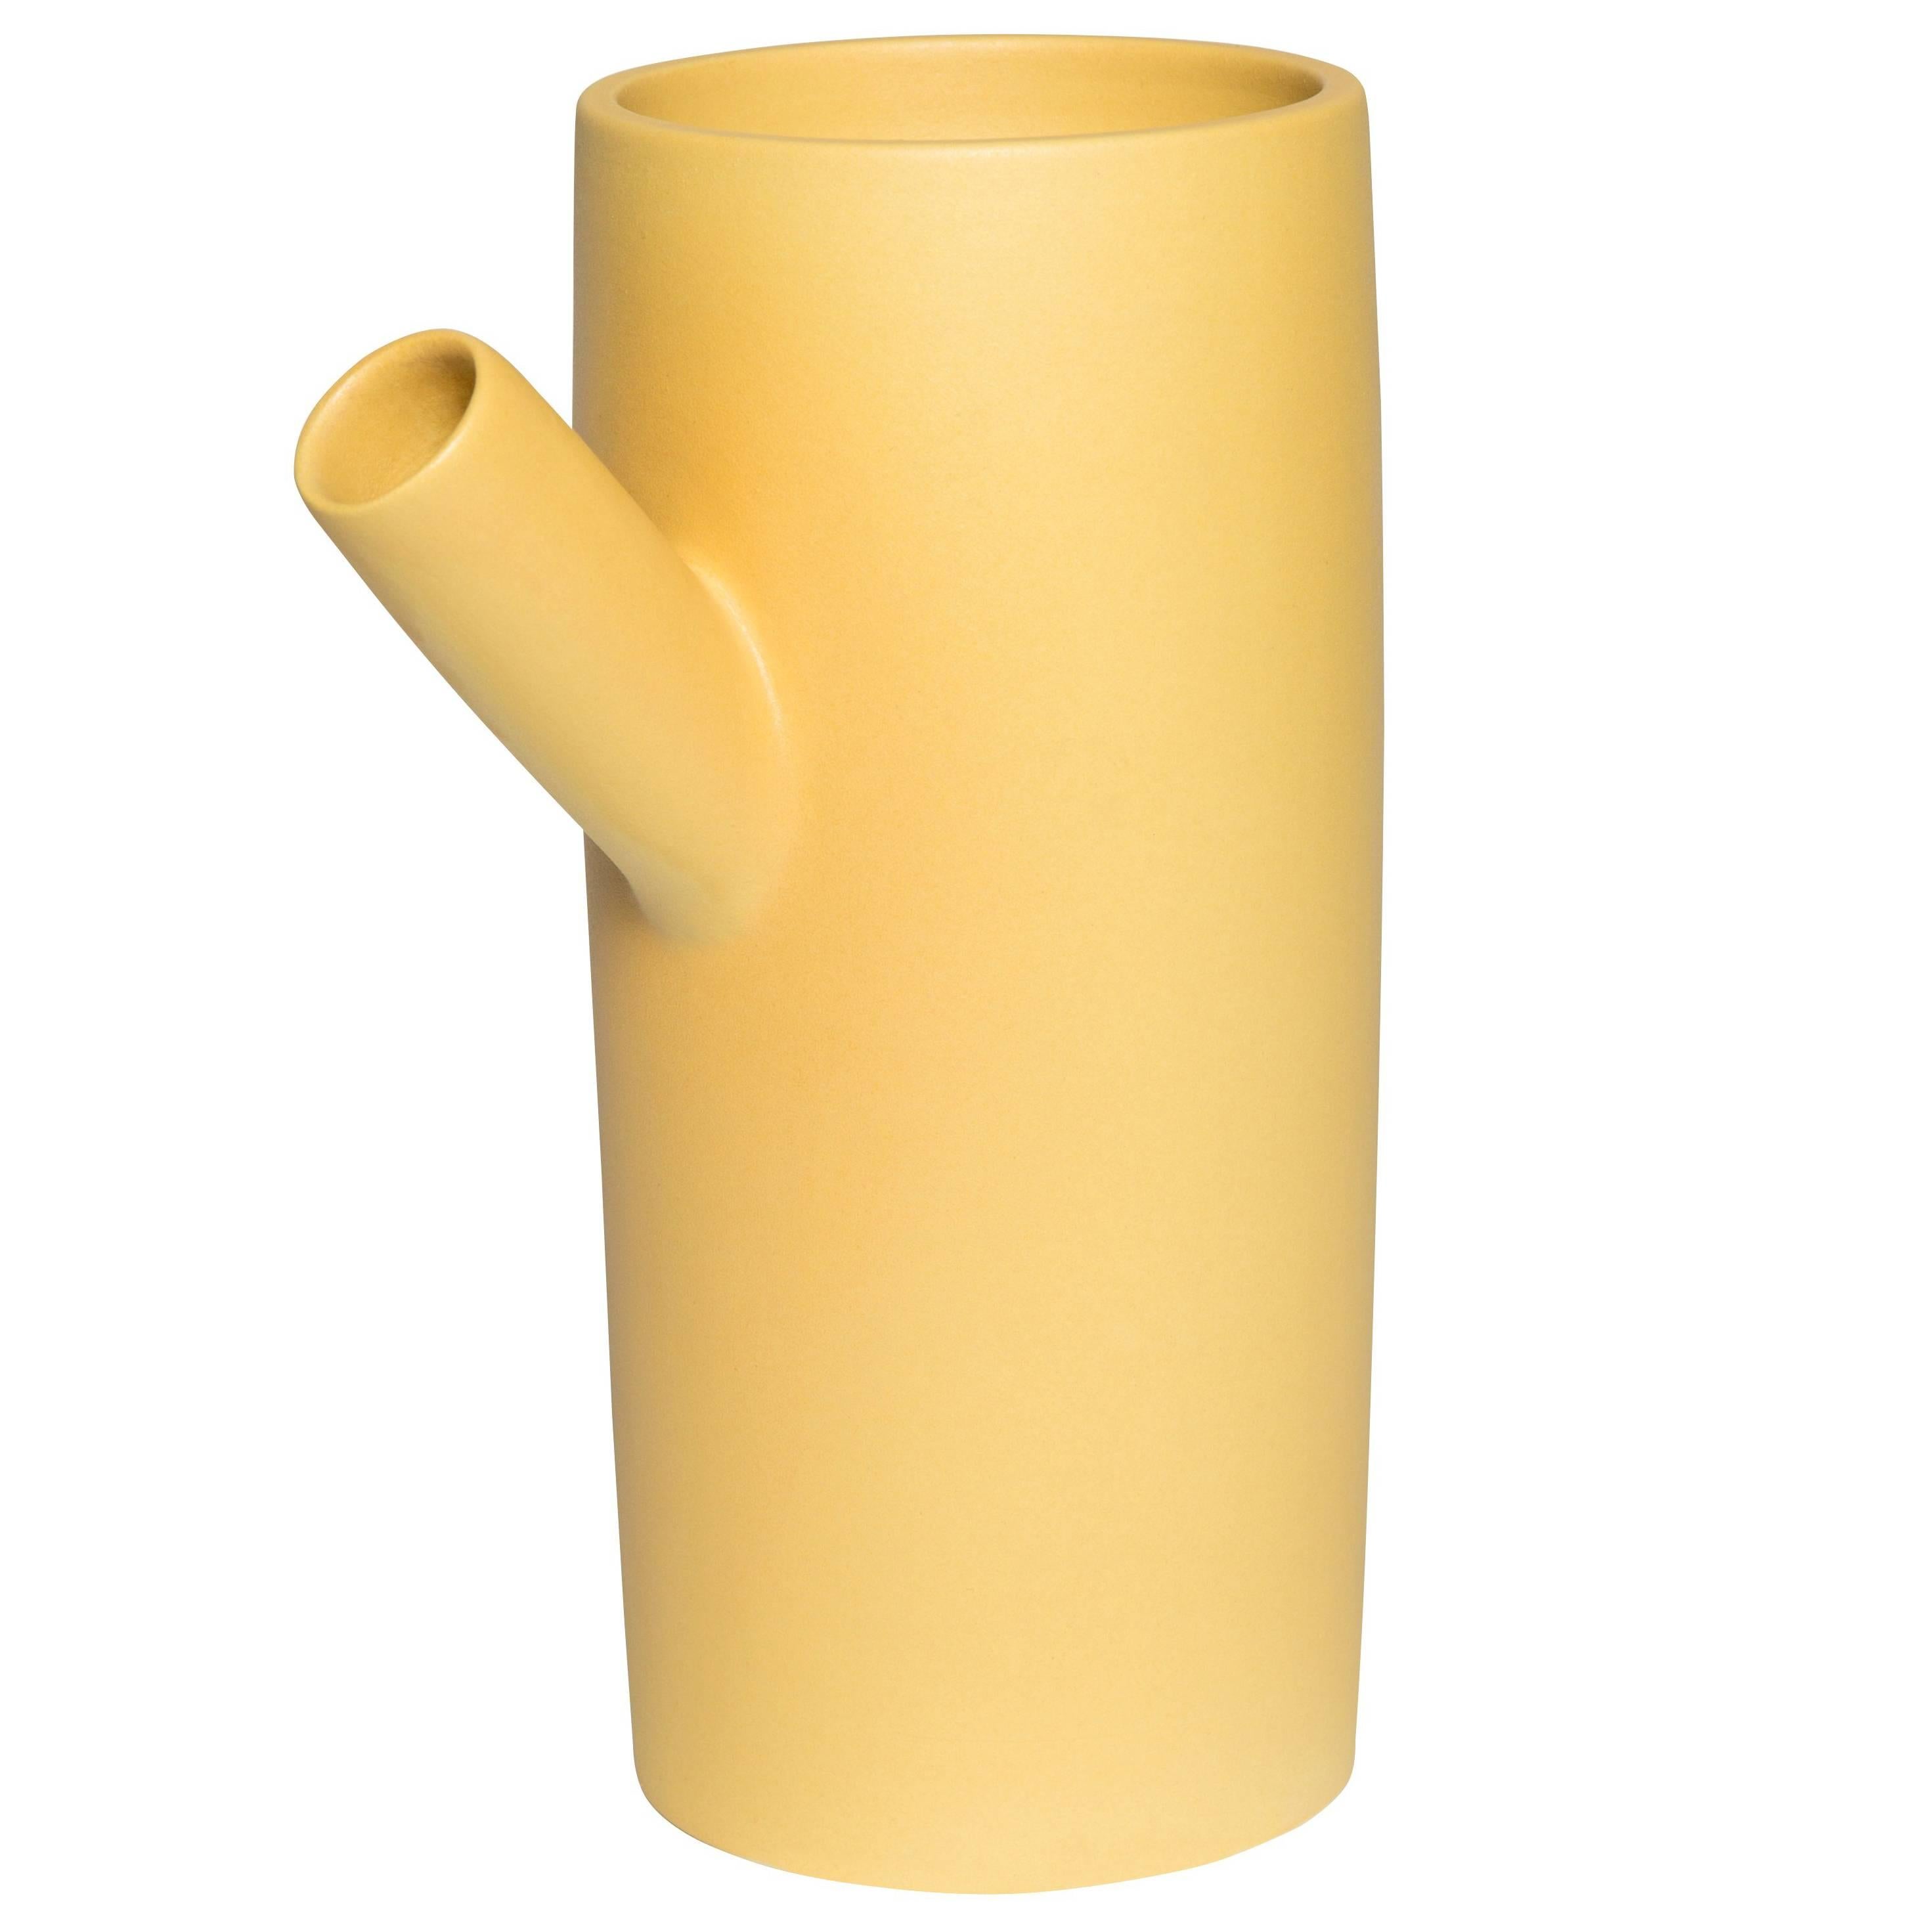  Vase en céramique Forsythia fait main par Pieces, pichet jaune moderne personnalisable en vente